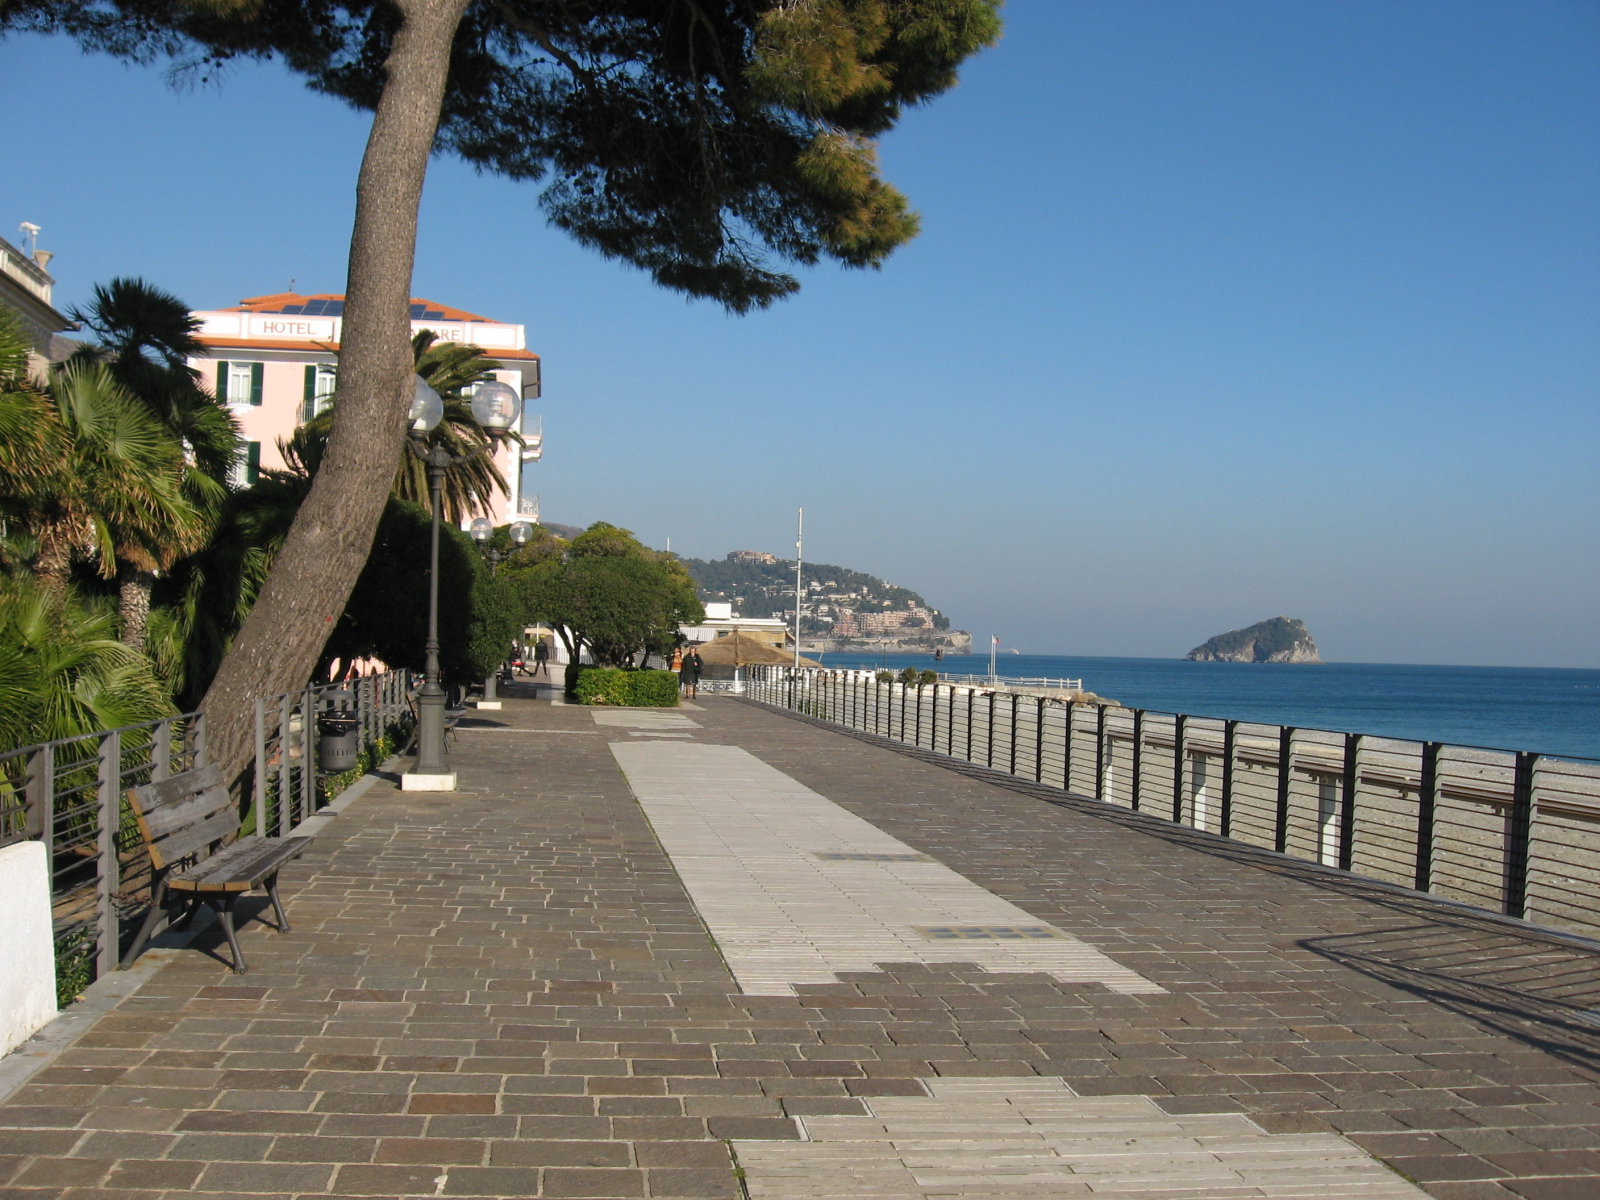 Promenade in resort Spotorno, Italy